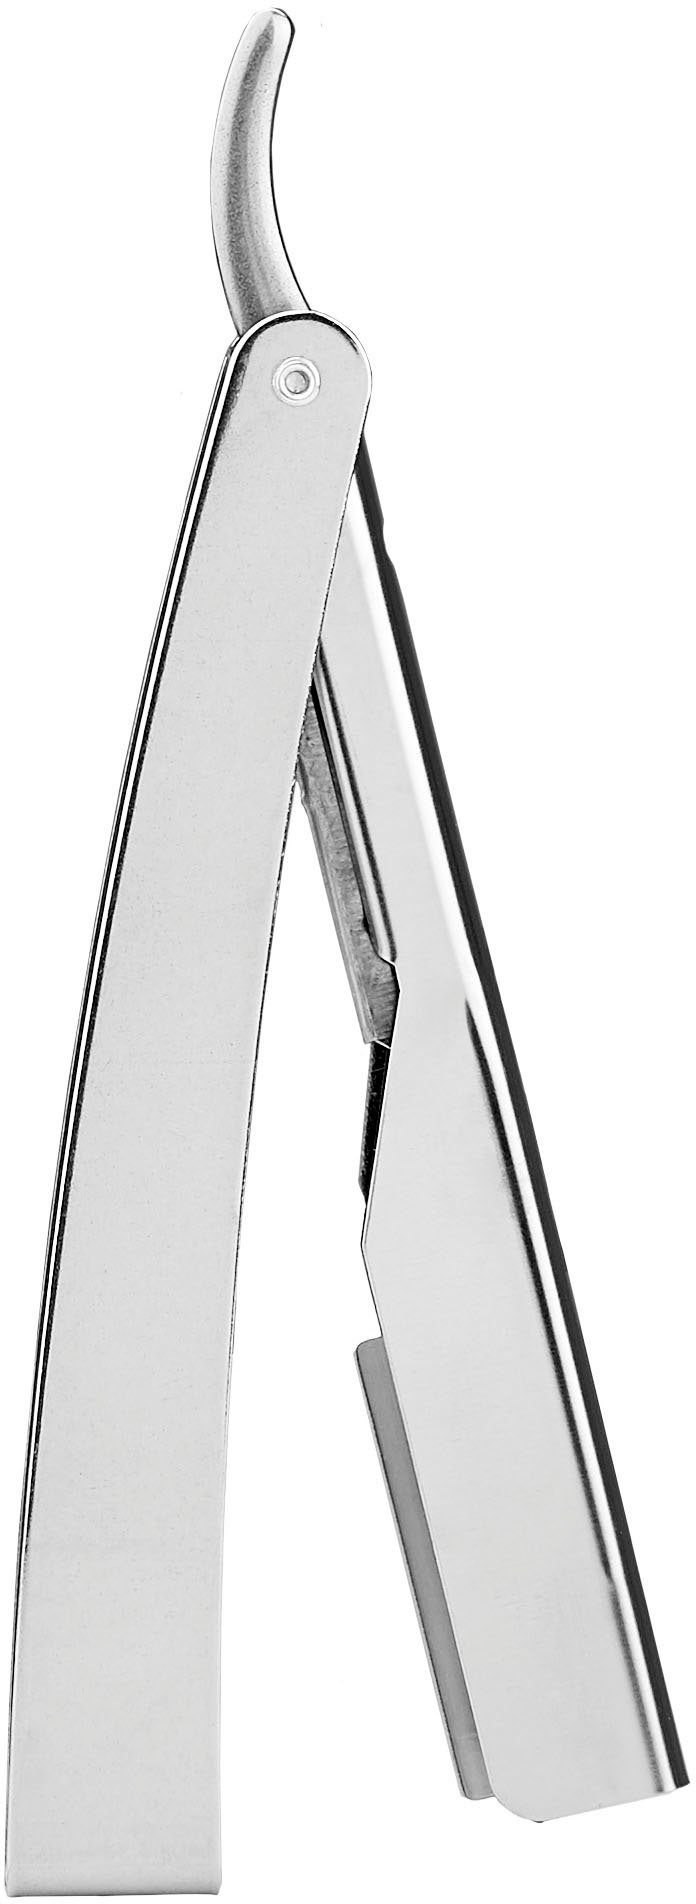 FRIPAC Rasiermesser 1955 mit Klappgriff silberfarben, praktischem Rasiermesser